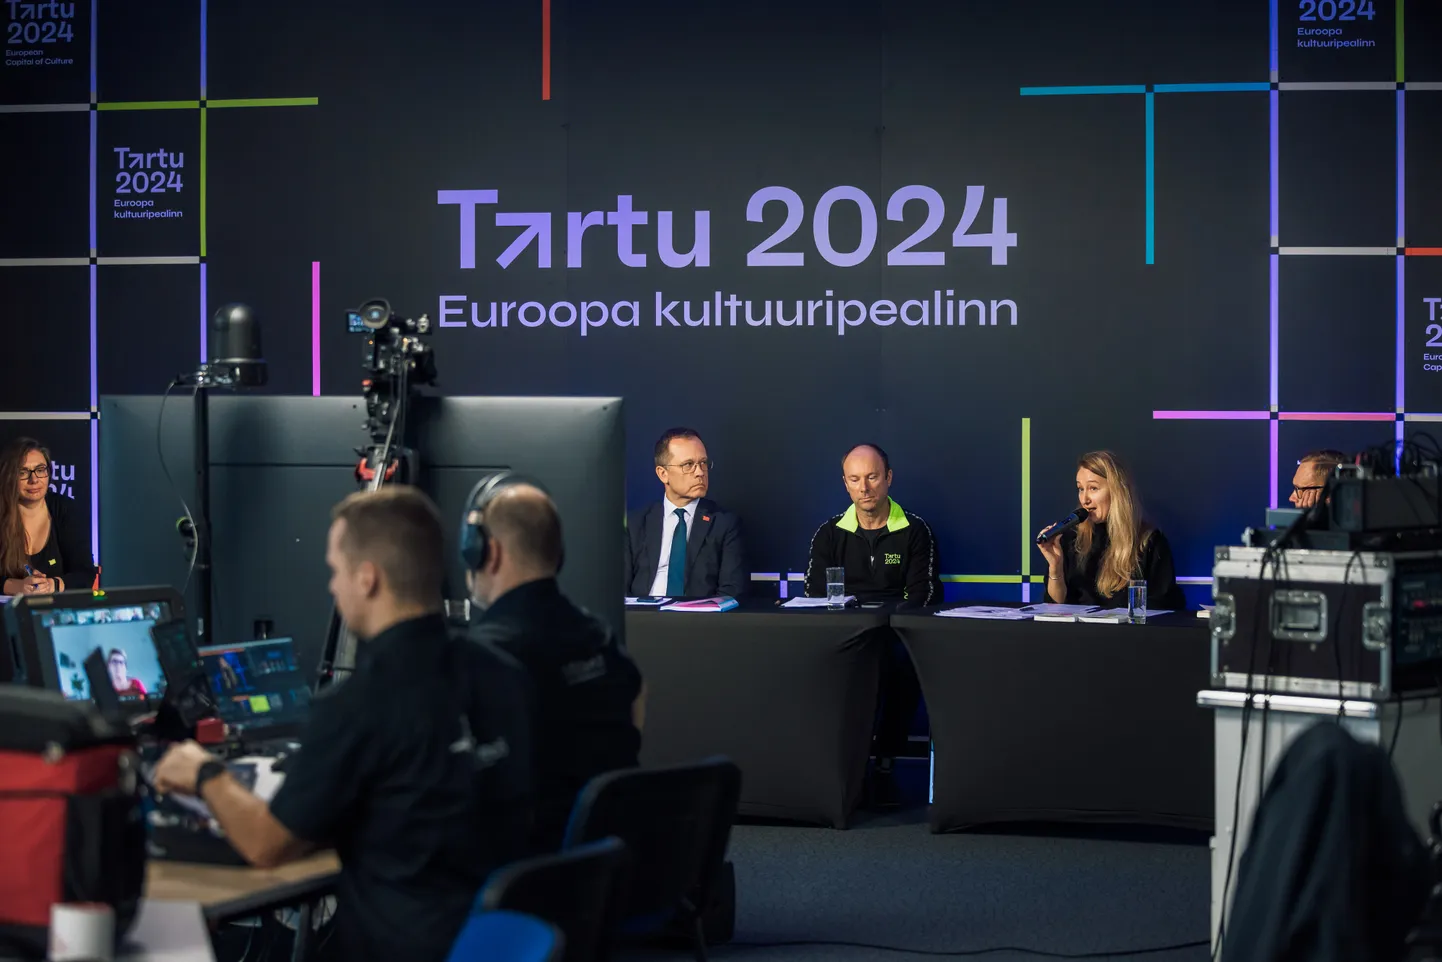 Tartu 2024 meeskond kohtus kultuuripealinnade ekspertkomisjoniga viimase vaheraporti kaitsmisel 7. novembril.